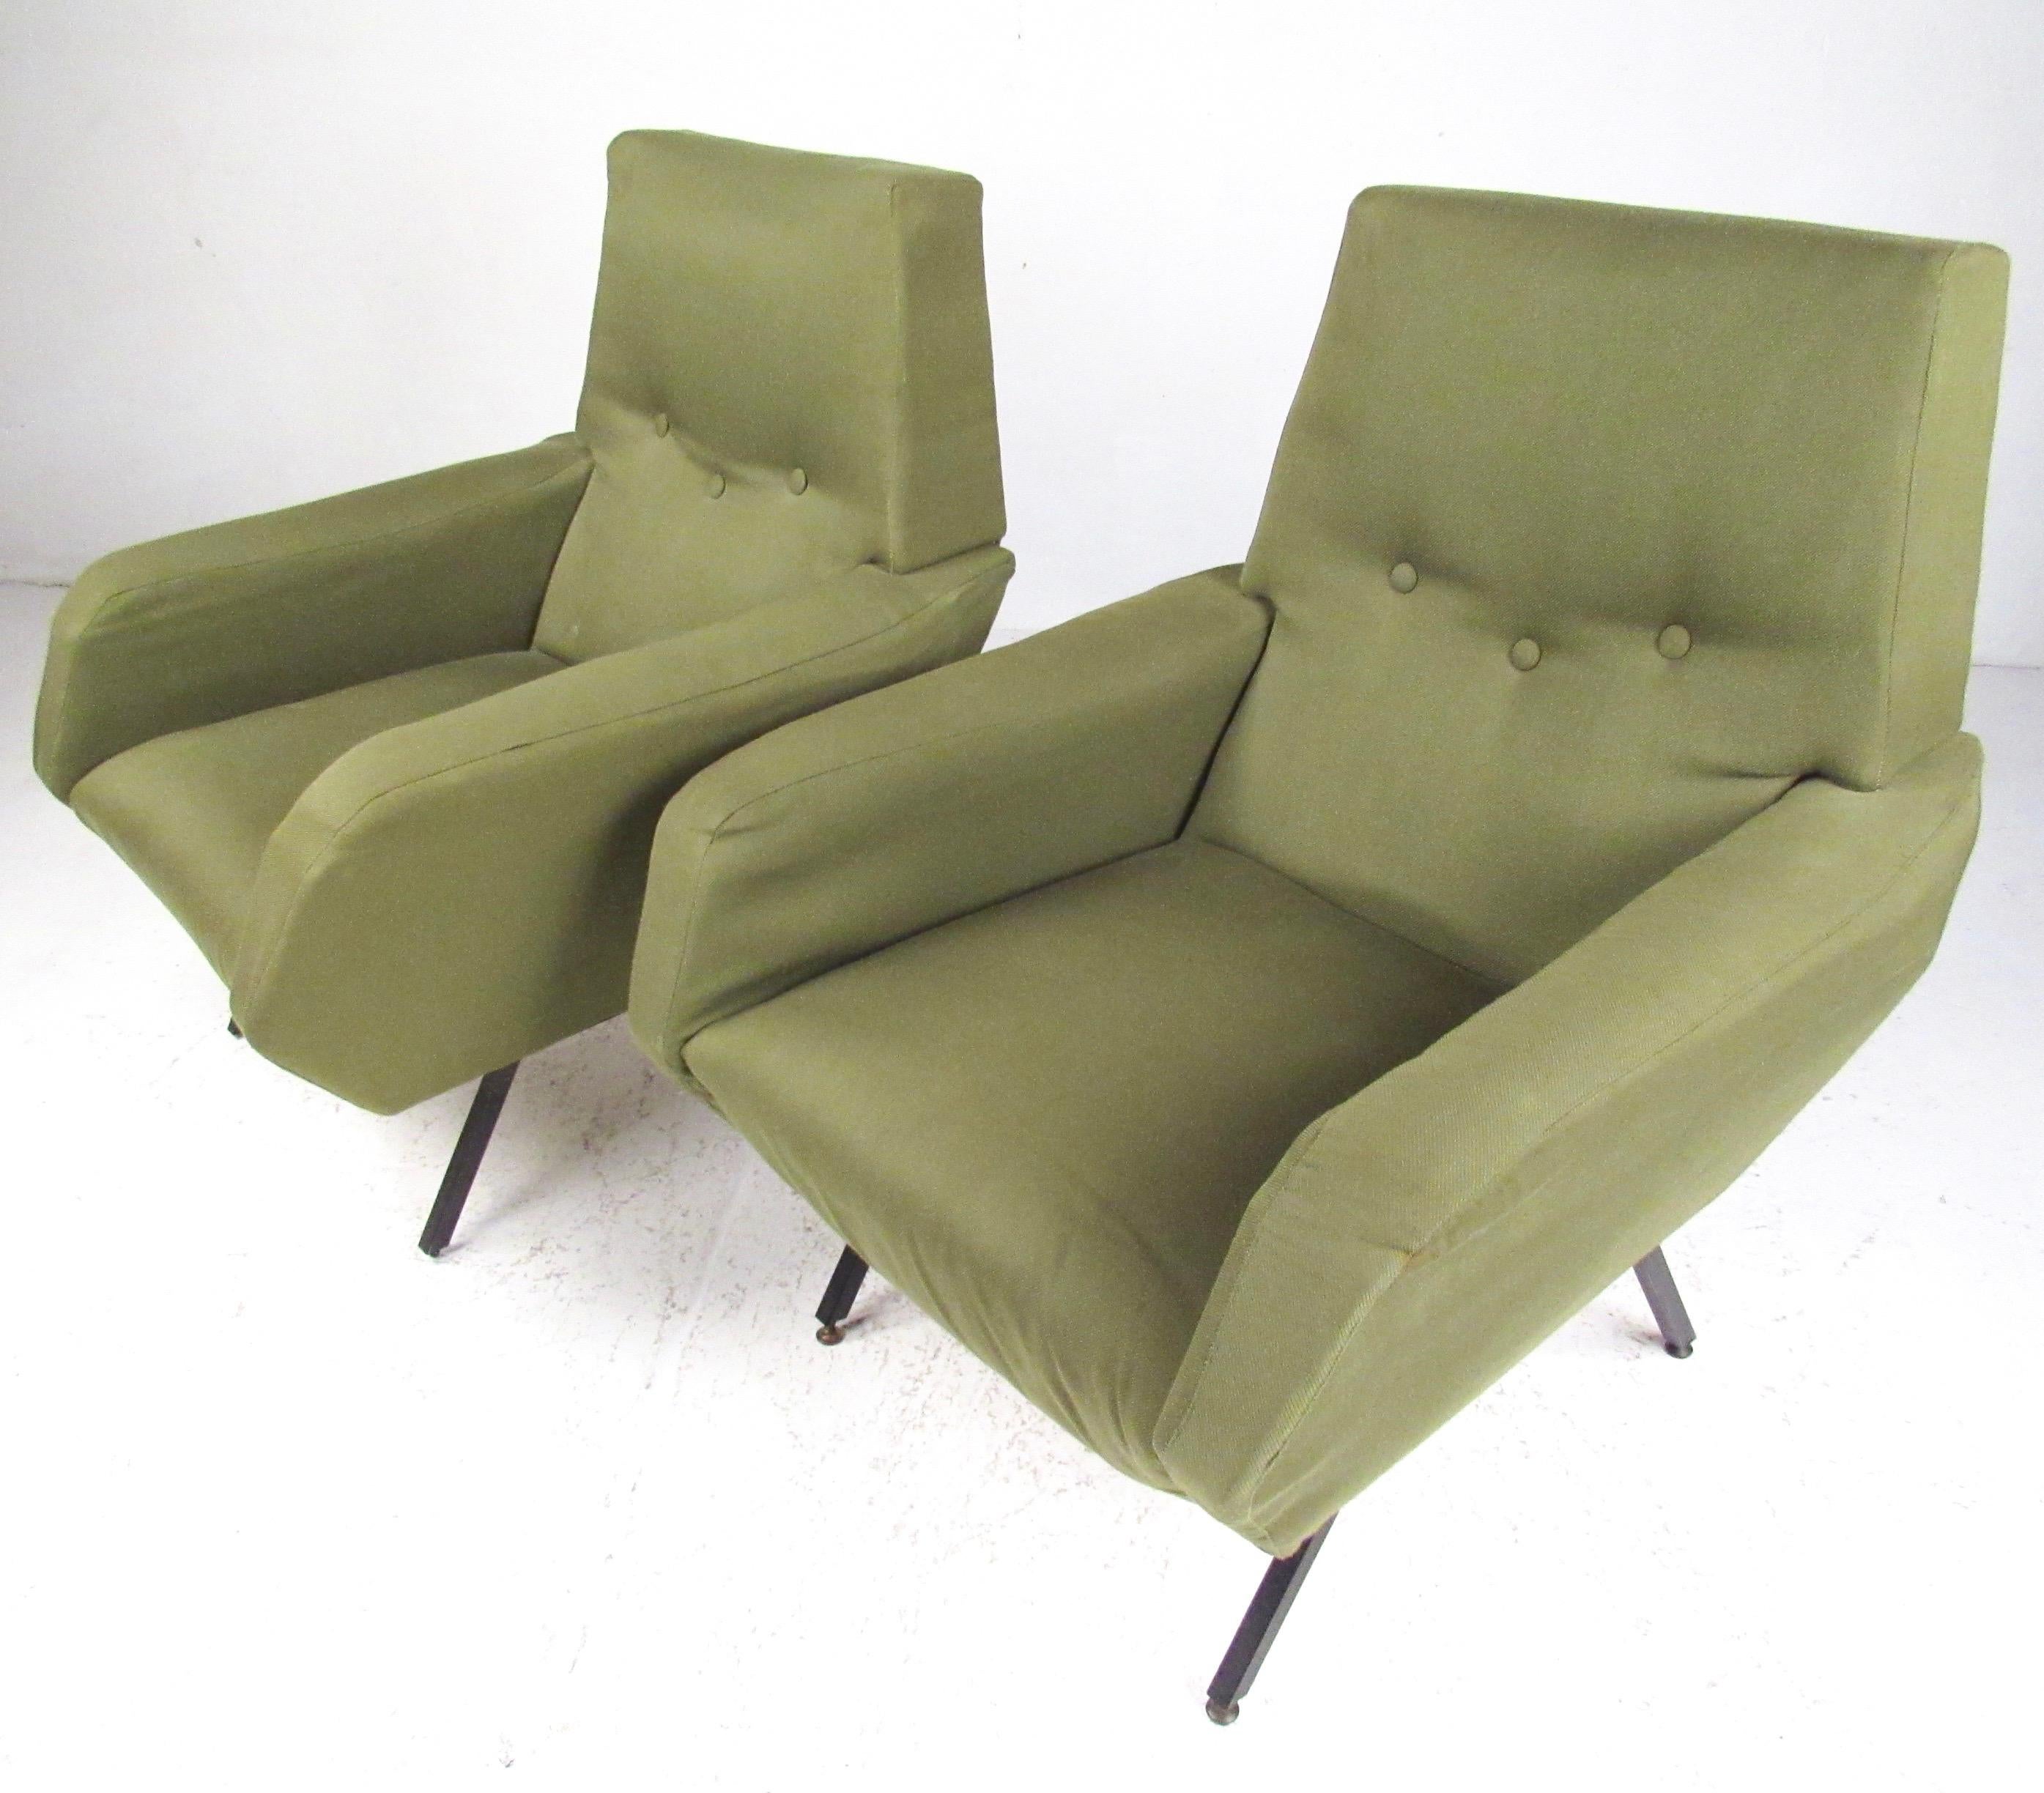 Cette paire étonnante de chaises longues de style Osvaldo Borsani présente un design moderne italien sculptural associé à un confort intemporel. Tapissée d'un revêtement vintage, la paire de chaises longues assorties de style midcentury présente des